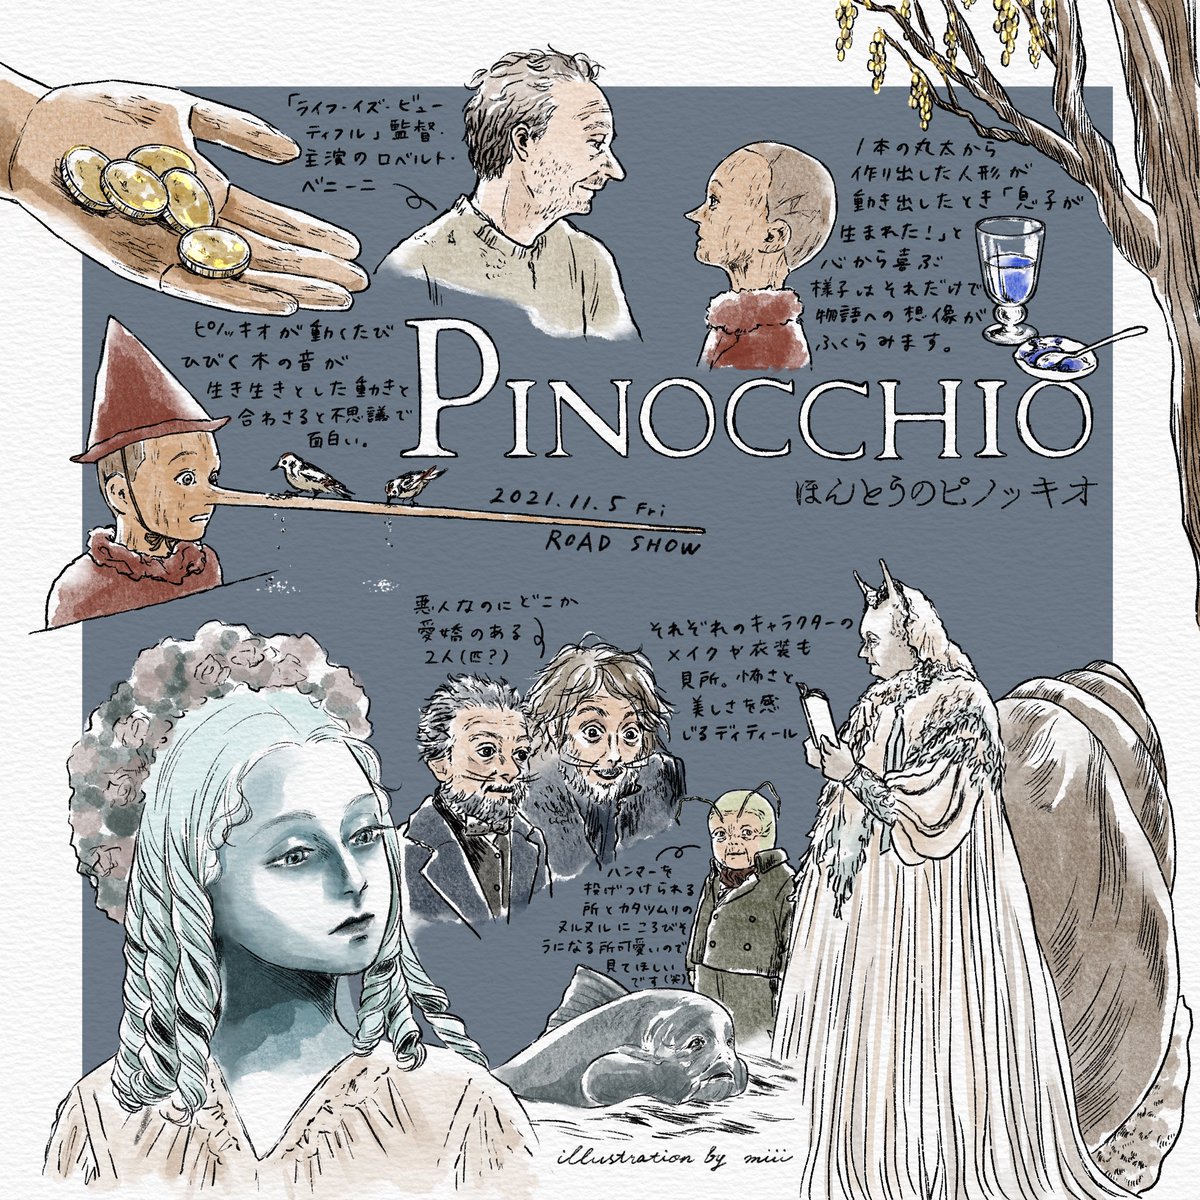 映画「ほんとうのピノッキオ」を鑑賞しました。
児童文学"ピノッキオの冒険"の映像化。
失敗から学び人間の子供になるまでのピノッキオの冒険と、ジェペットの深い愛情を無下にする子供の残酷さを含めたダークな世界観に惹かれました。

◾️11月5日公開
@FansVoiceJP #ほんとうのピノッキオ #pinocchio 